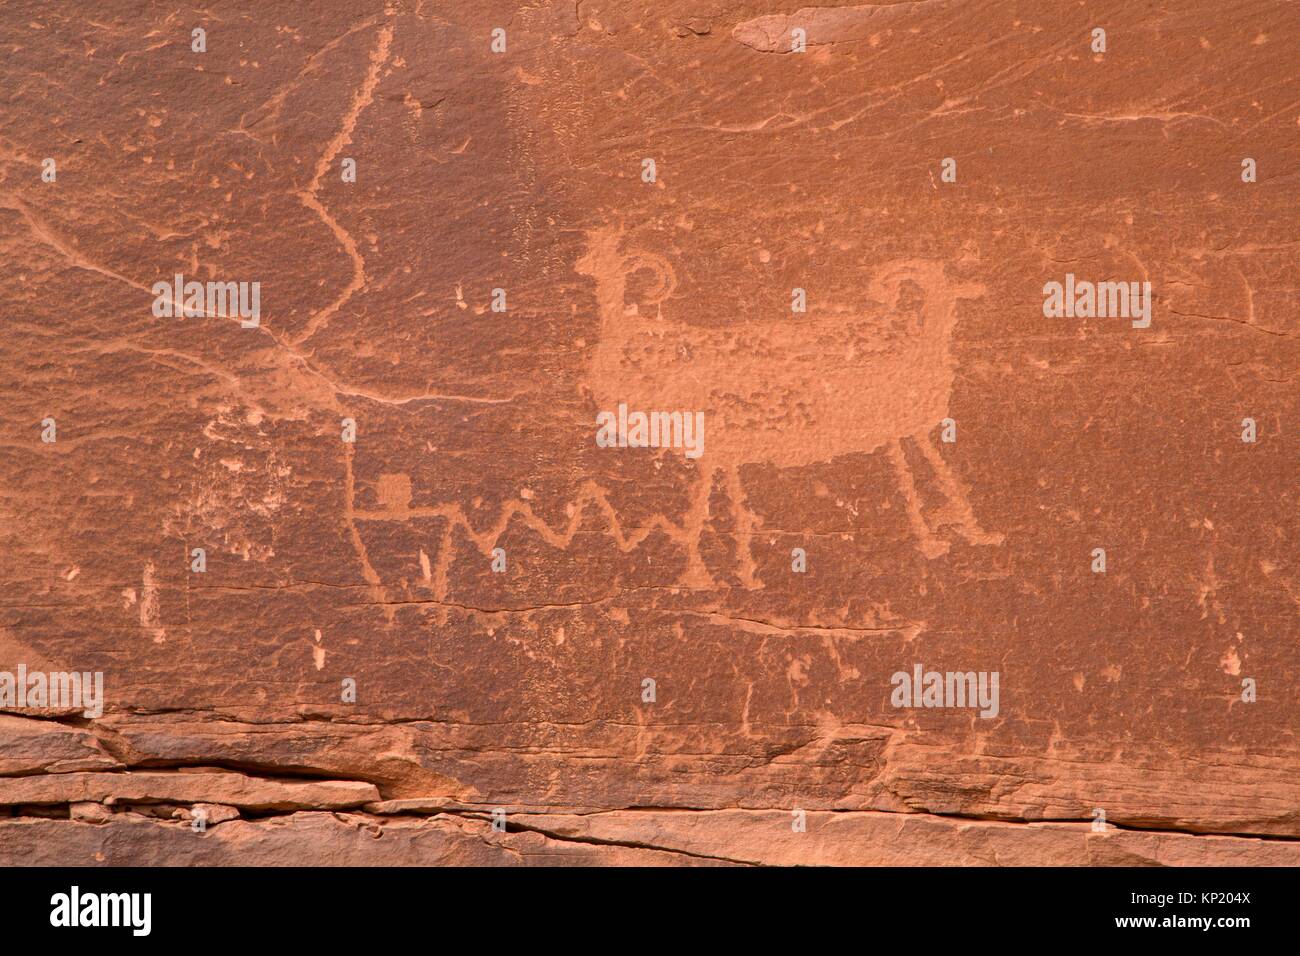 Petroglyphs at Utah Highway 279 Rock Art Site, Potash-Lower Colorado River Scenic Byway, Grand County, Utah. Stock Photo